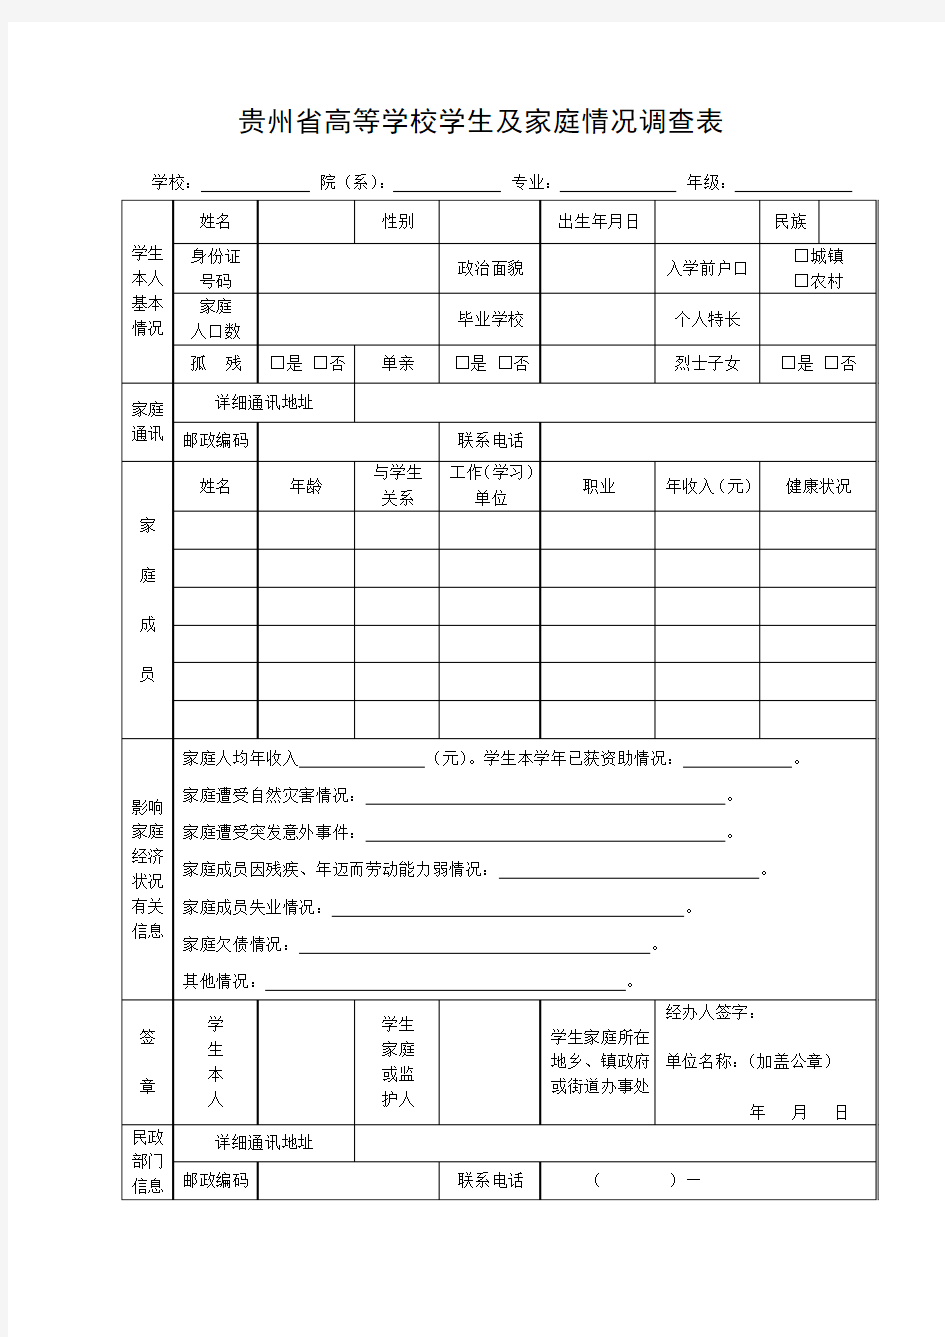 贵州省高等学校学生及家庭情况调查表(1)